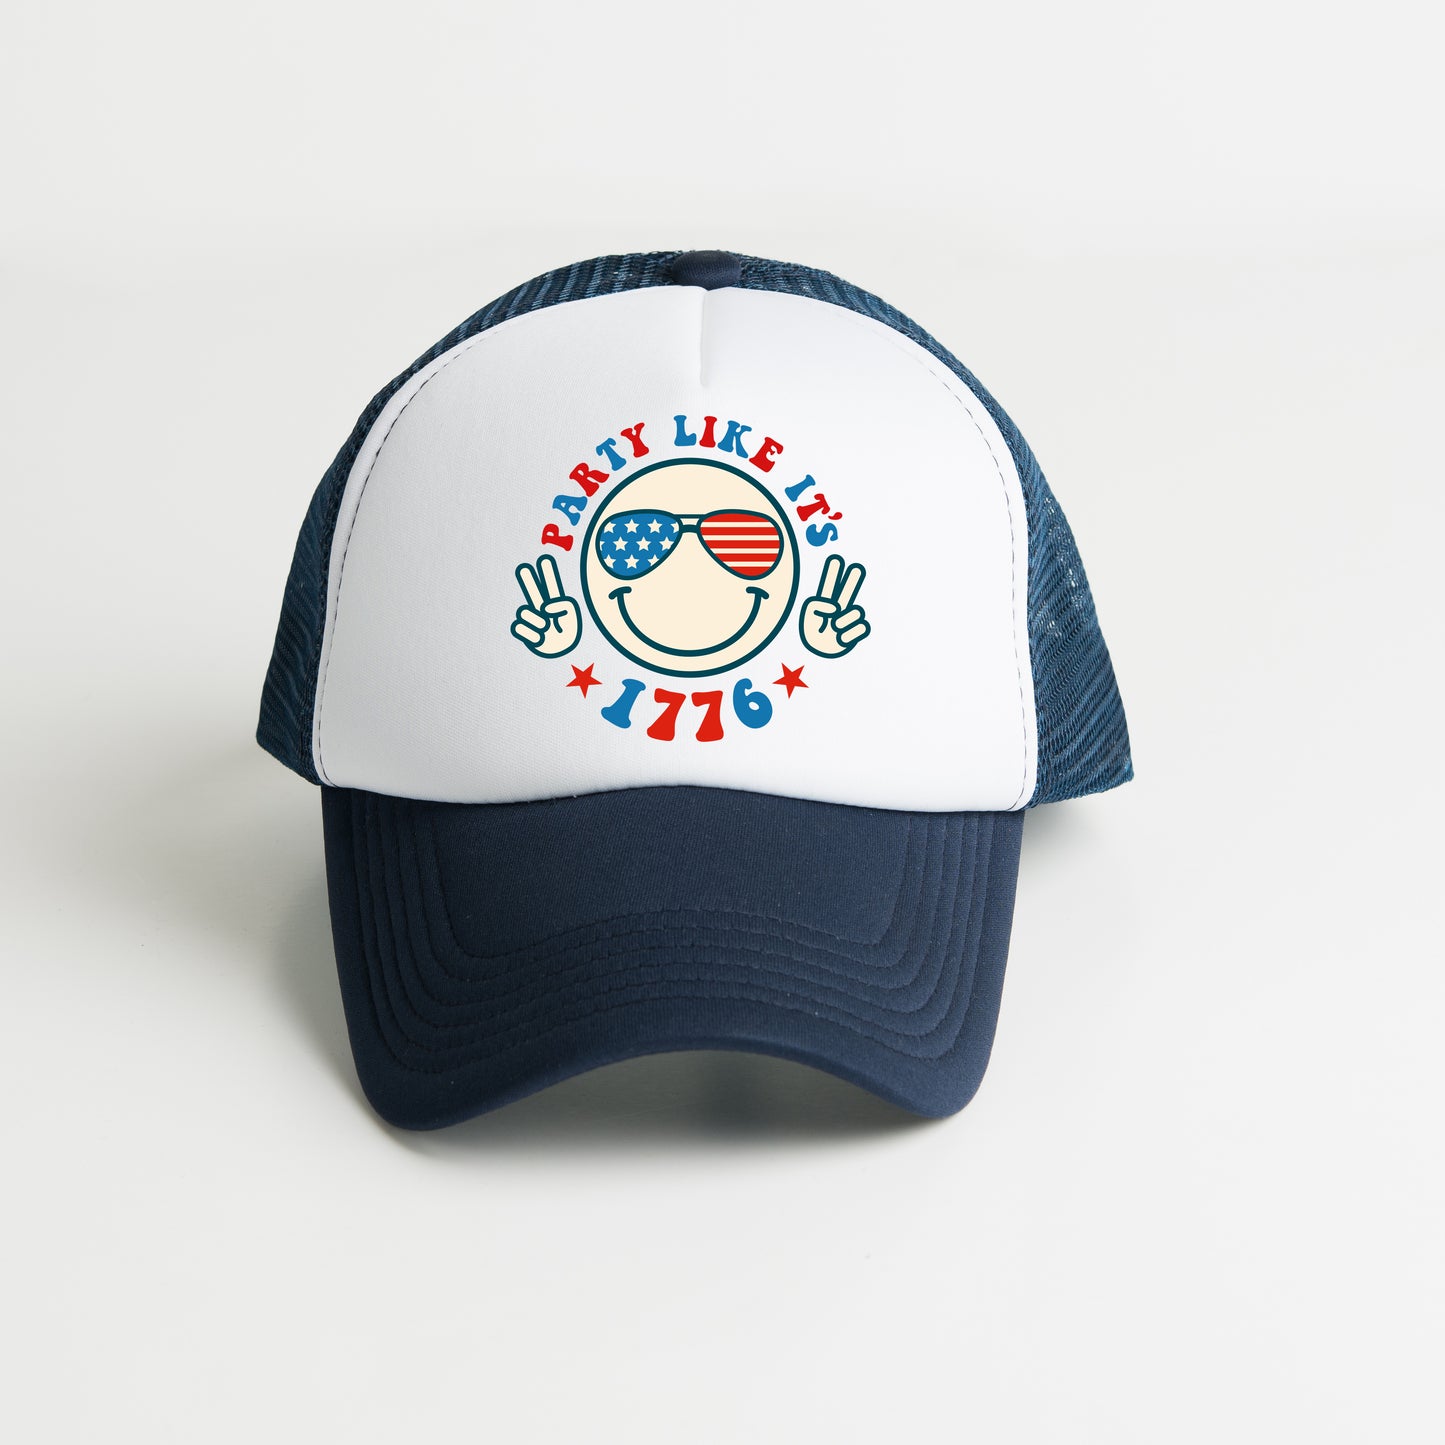 Party Like It's 1776 | Foam Trucker Hat